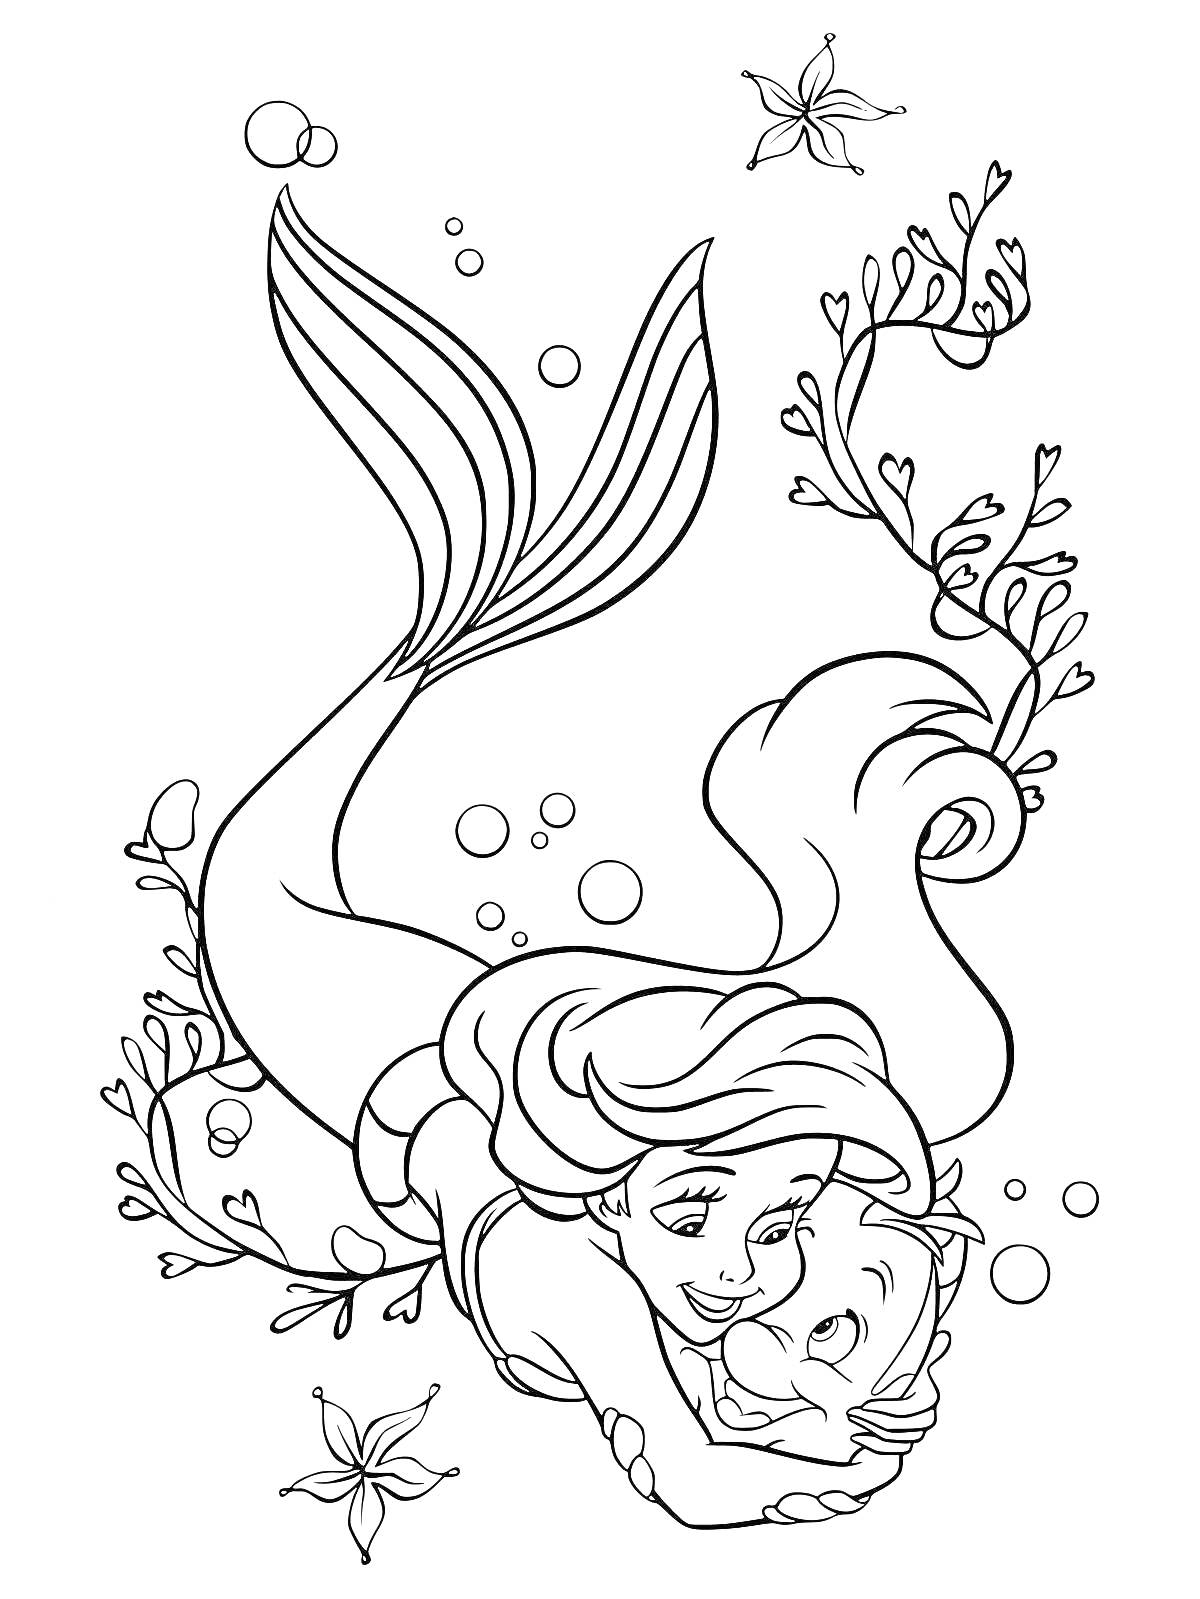 РаскраскаРусалка Ариэль с другом, плавающие среди пузырьков и водорослей